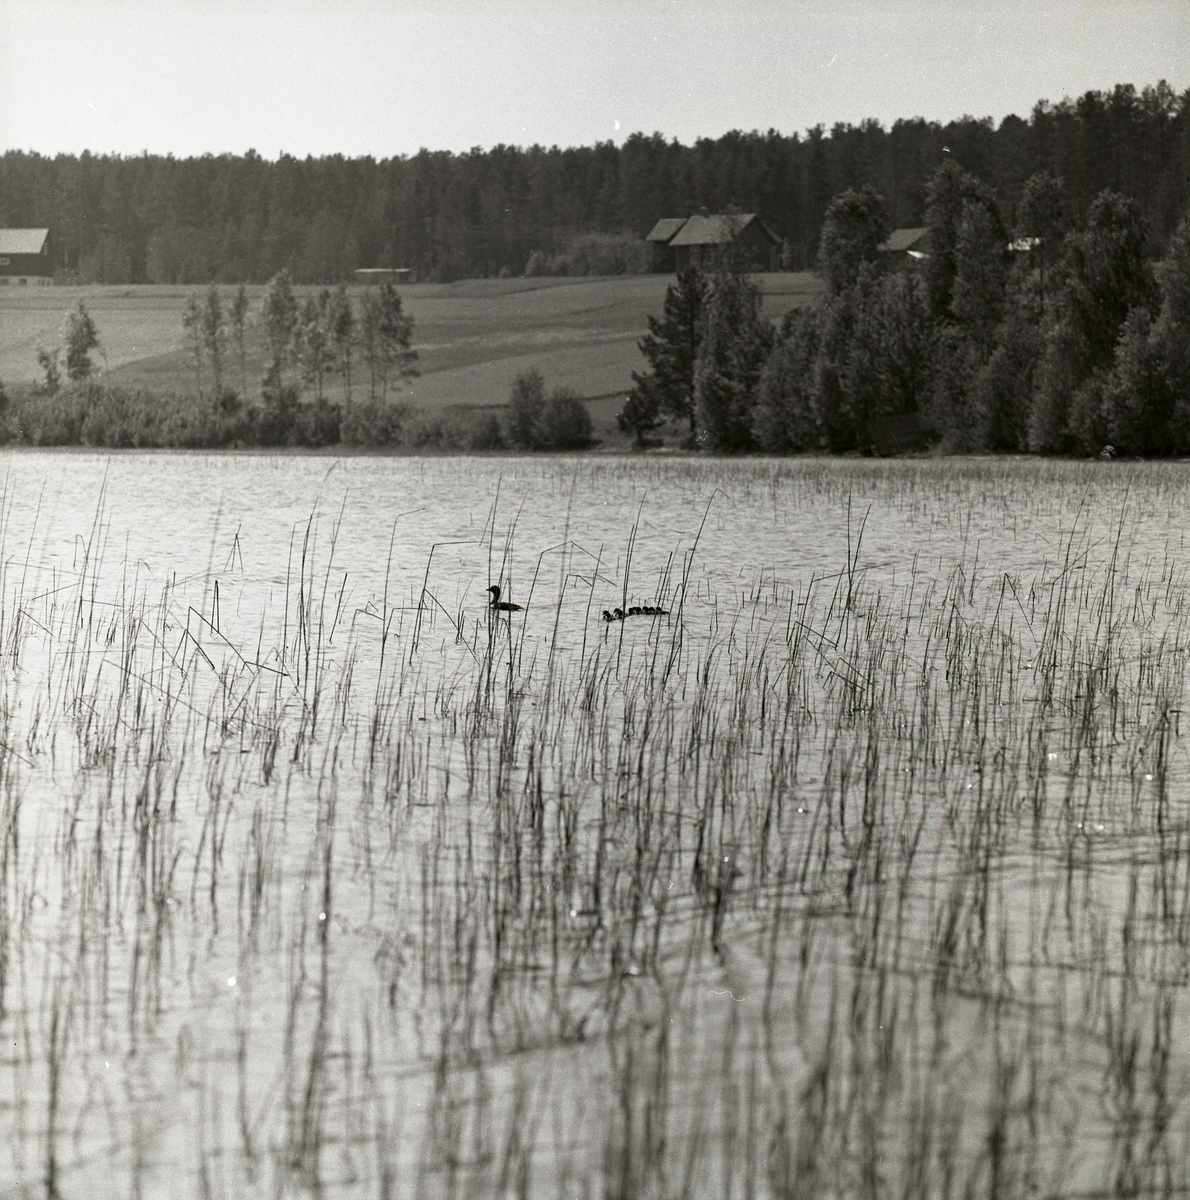 Bland vassen i en sjö simmar en knipa med sina ungar. I bakgrunden syns skog, åkermark, och byggnader, Hölesjön den 6 juni 1960.